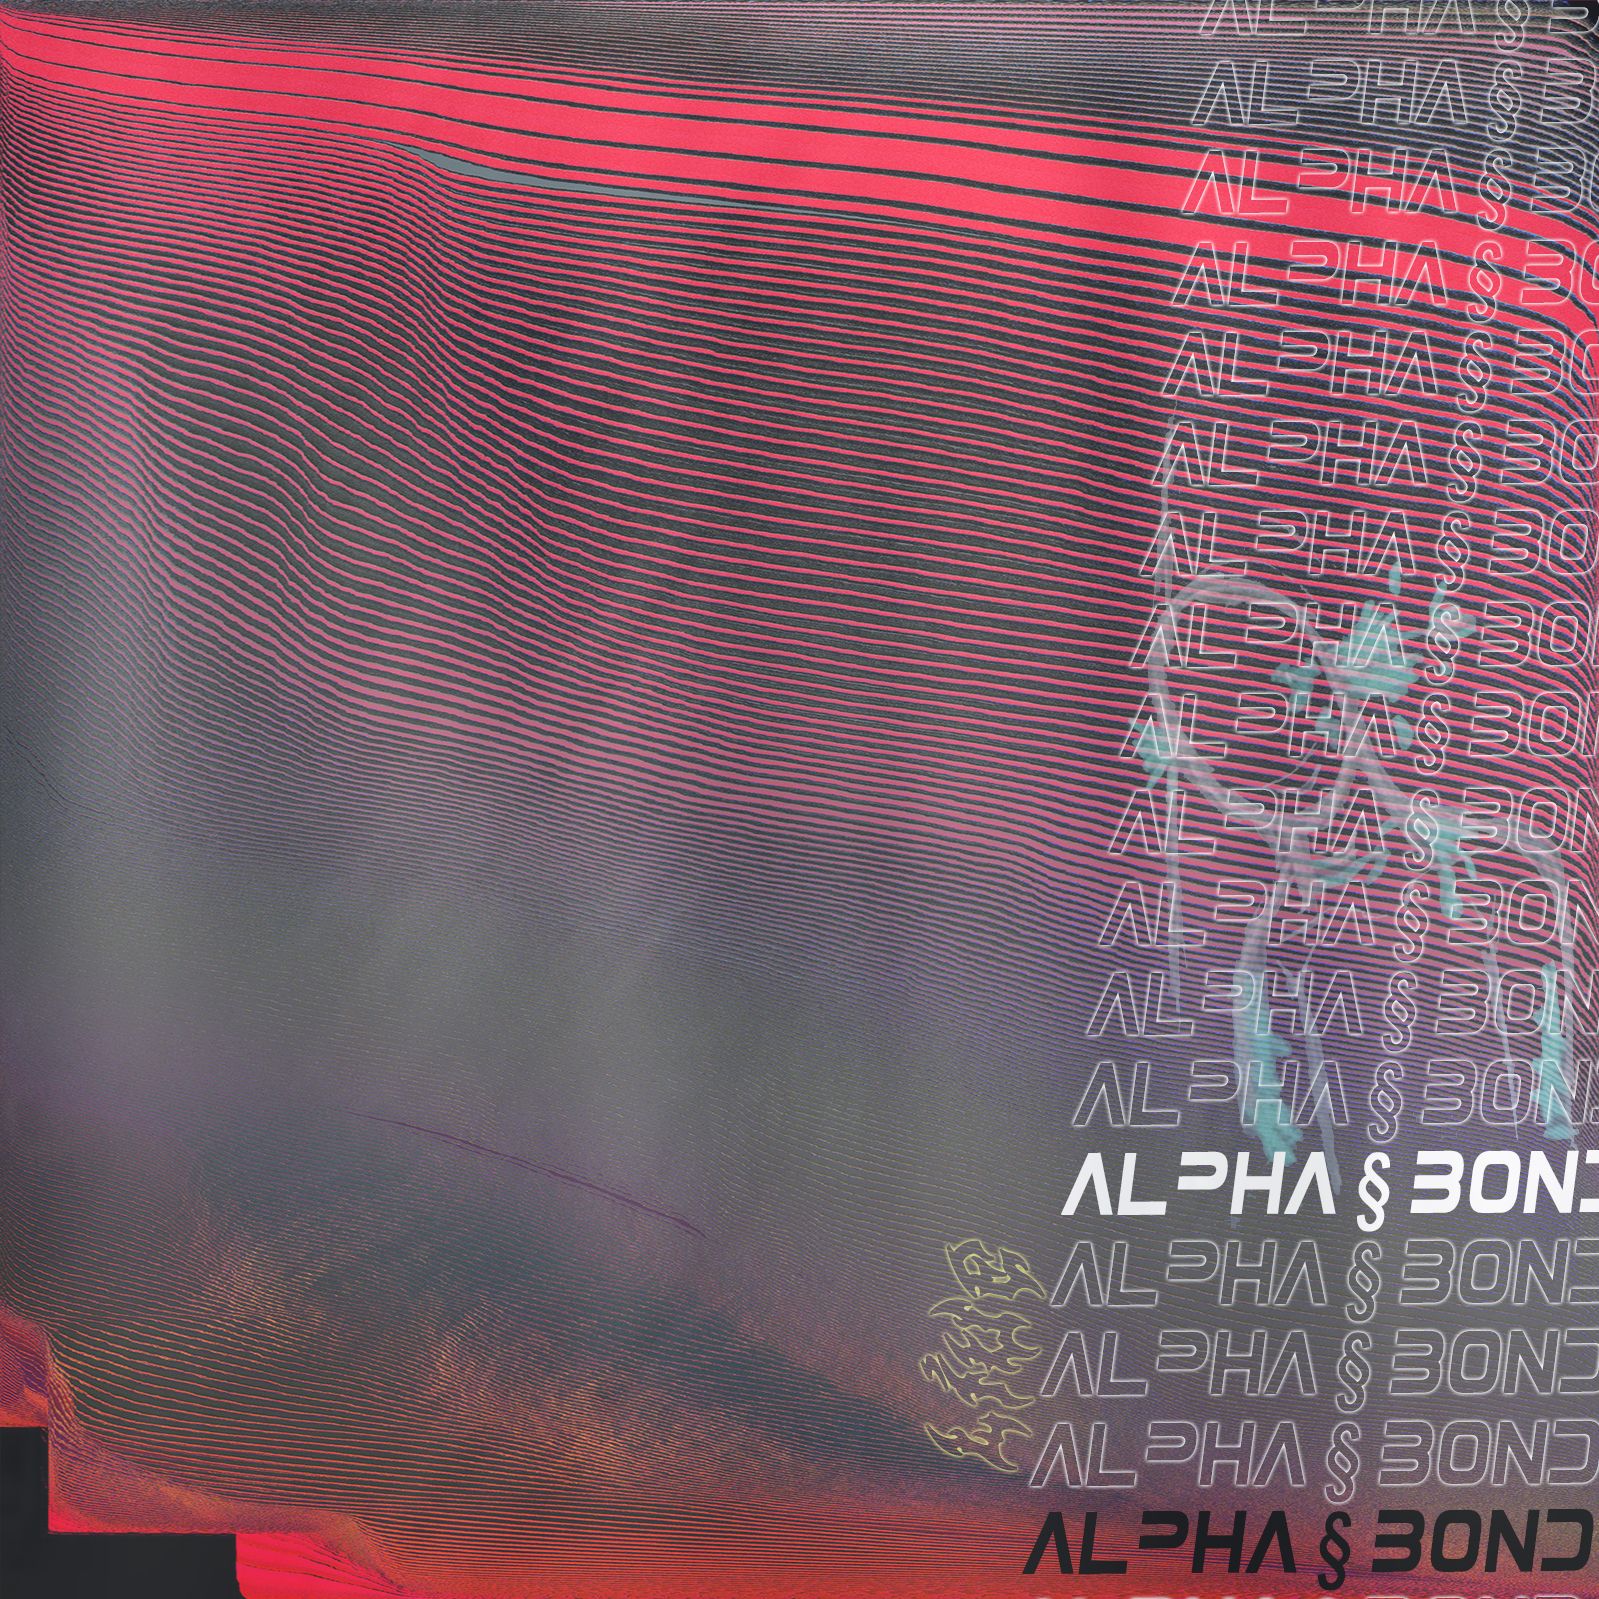 ڈاؤن لوڈ کریں alpha § bond